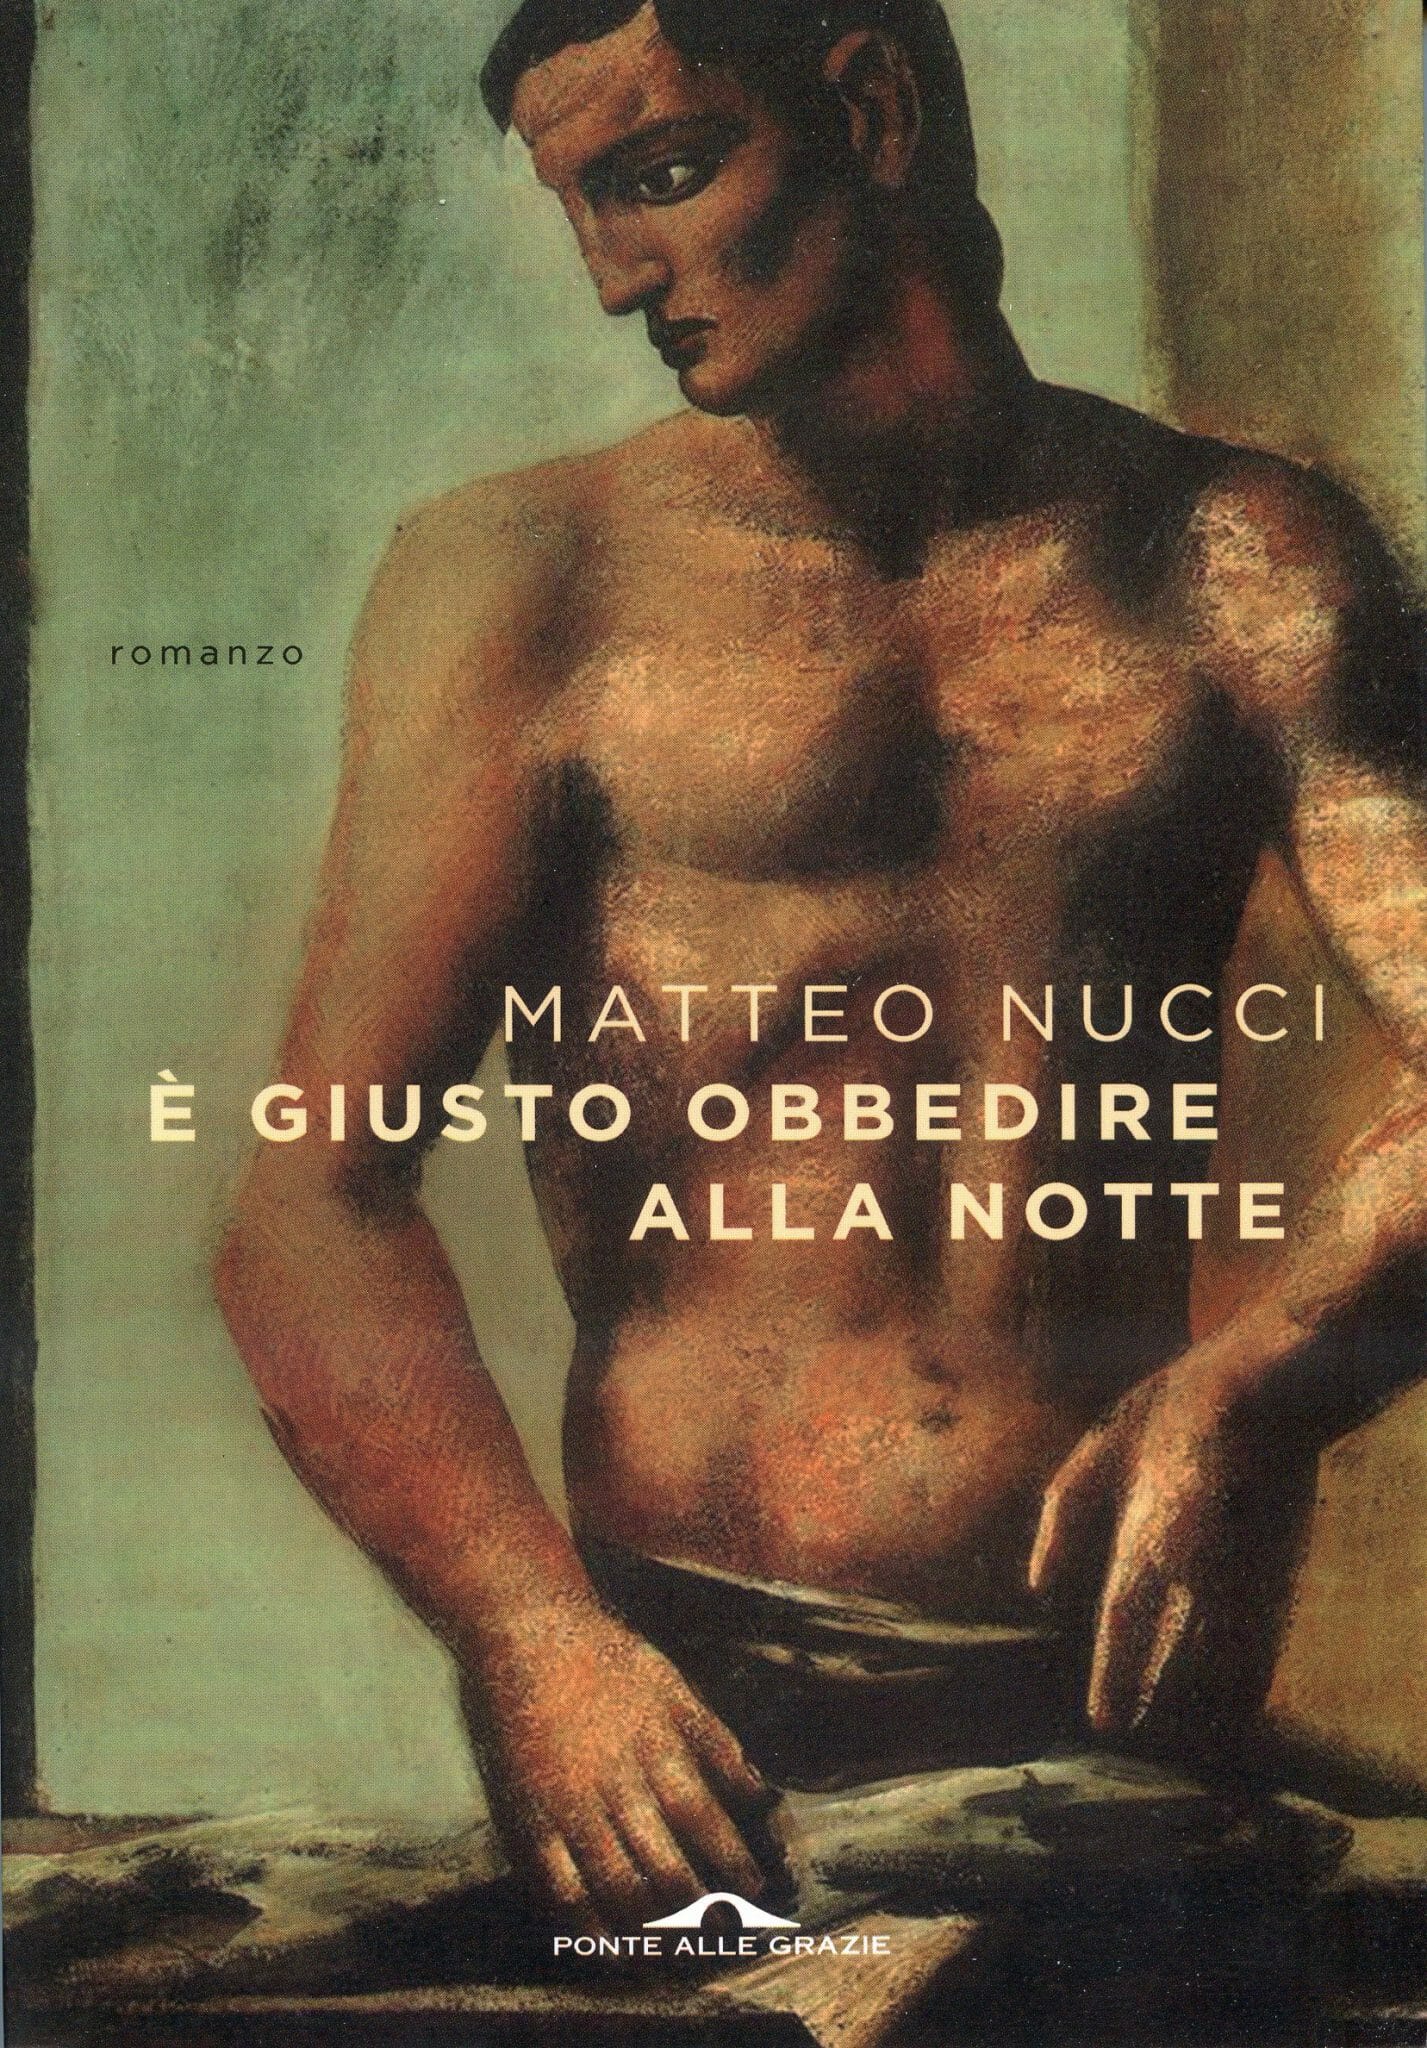 Matteo Nucci